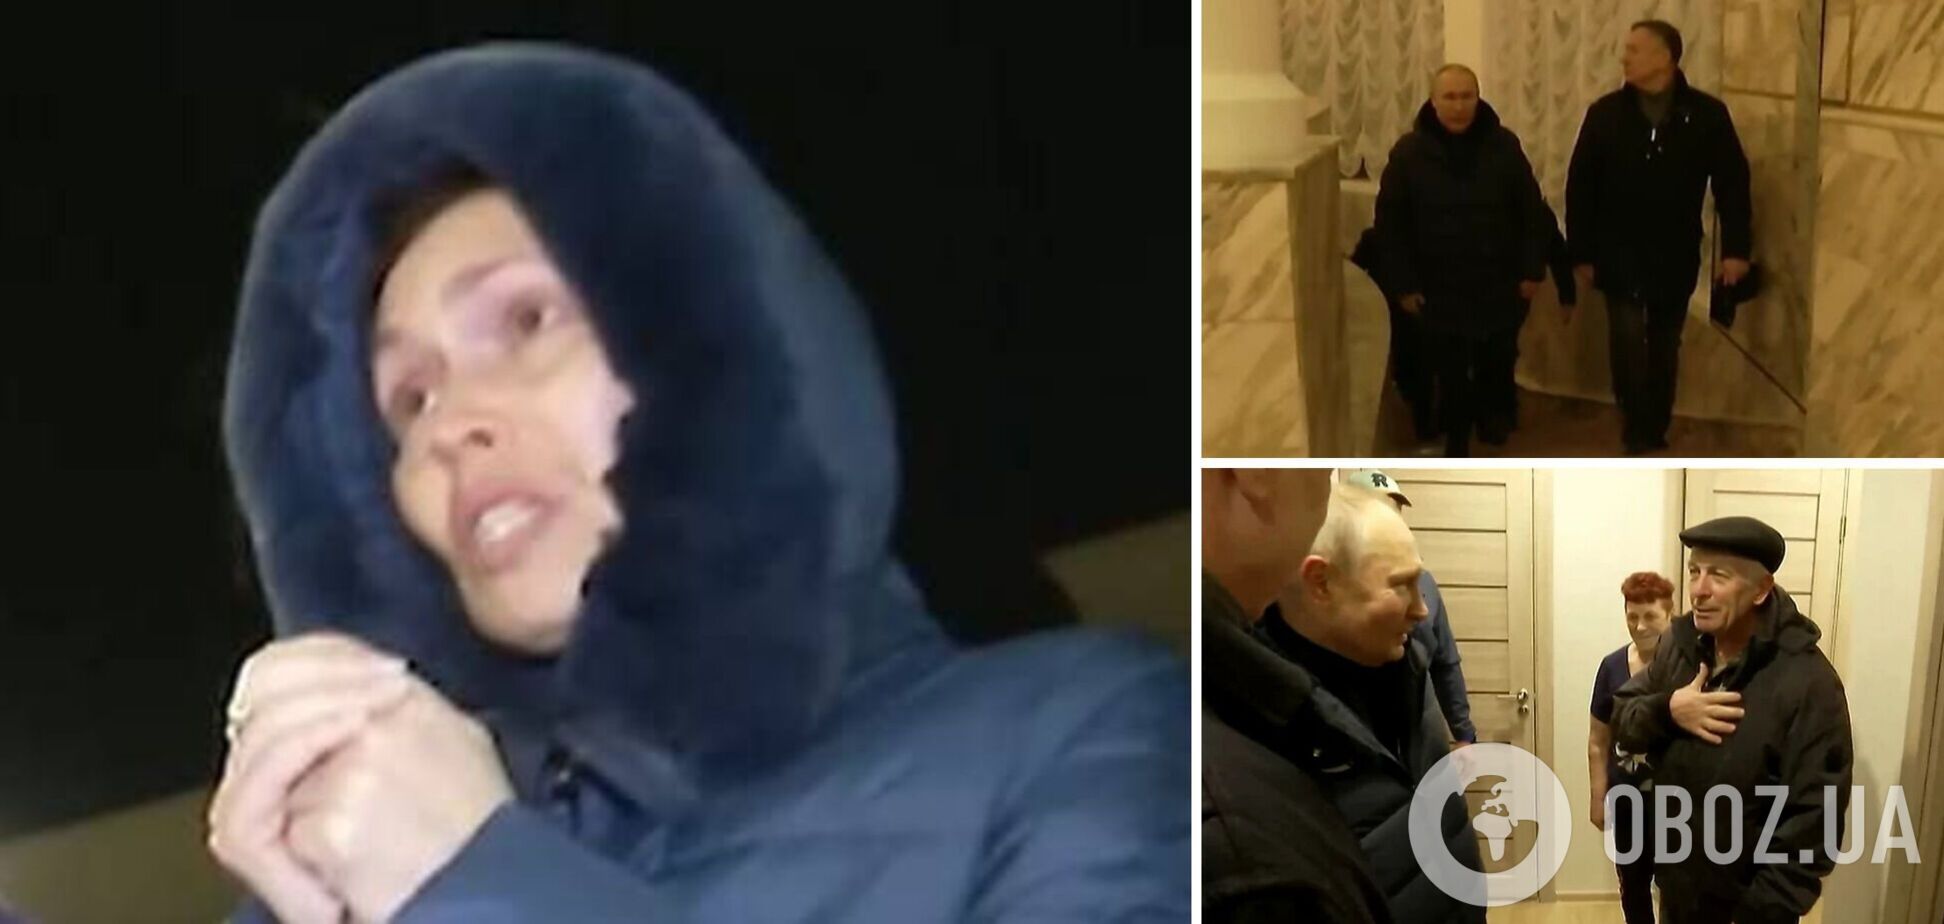 Всегда была за Россию: идентифицирована жительница Мариуполя, которая благодарила Путина за 'победу'. Фото